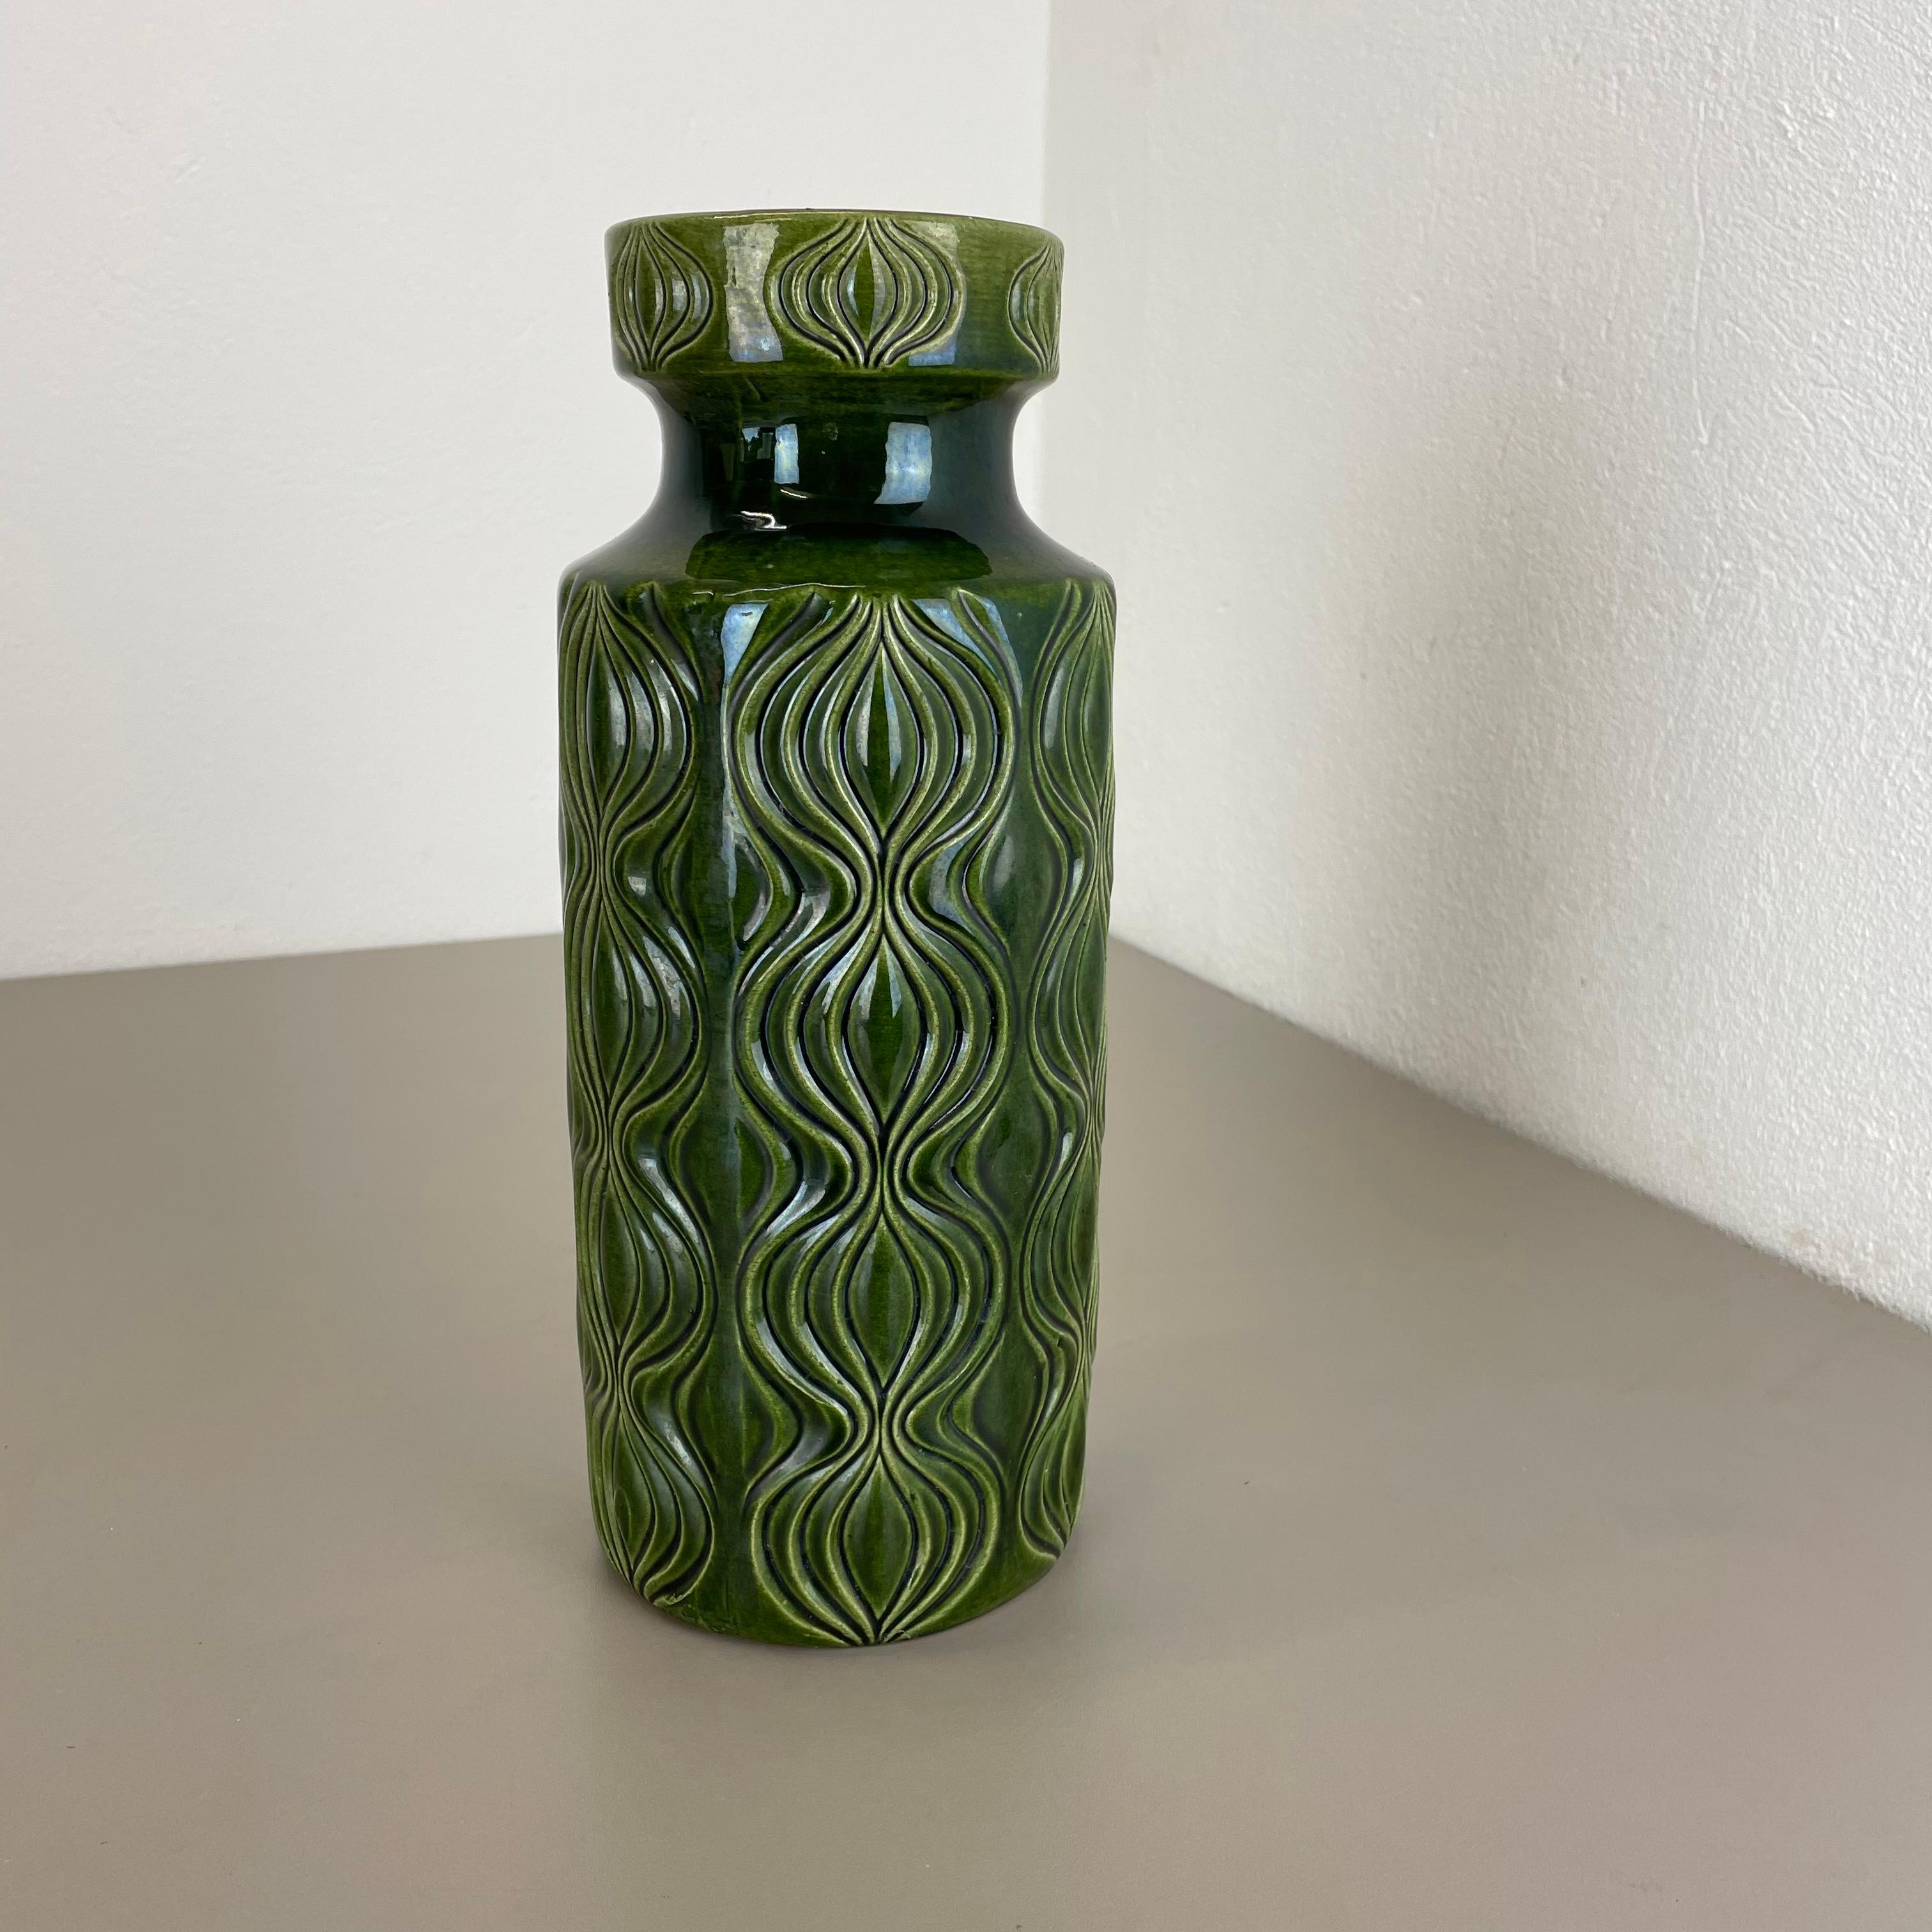 Article :

Vase d'art en lave grasse


Producteur :

Scheurich, Allemagne


Design :

N° 285-30



Décennie :

1970s


Description :

Ce vase vintage original a été produit dans les années 1970 en Allemagne. Il est réalisé en